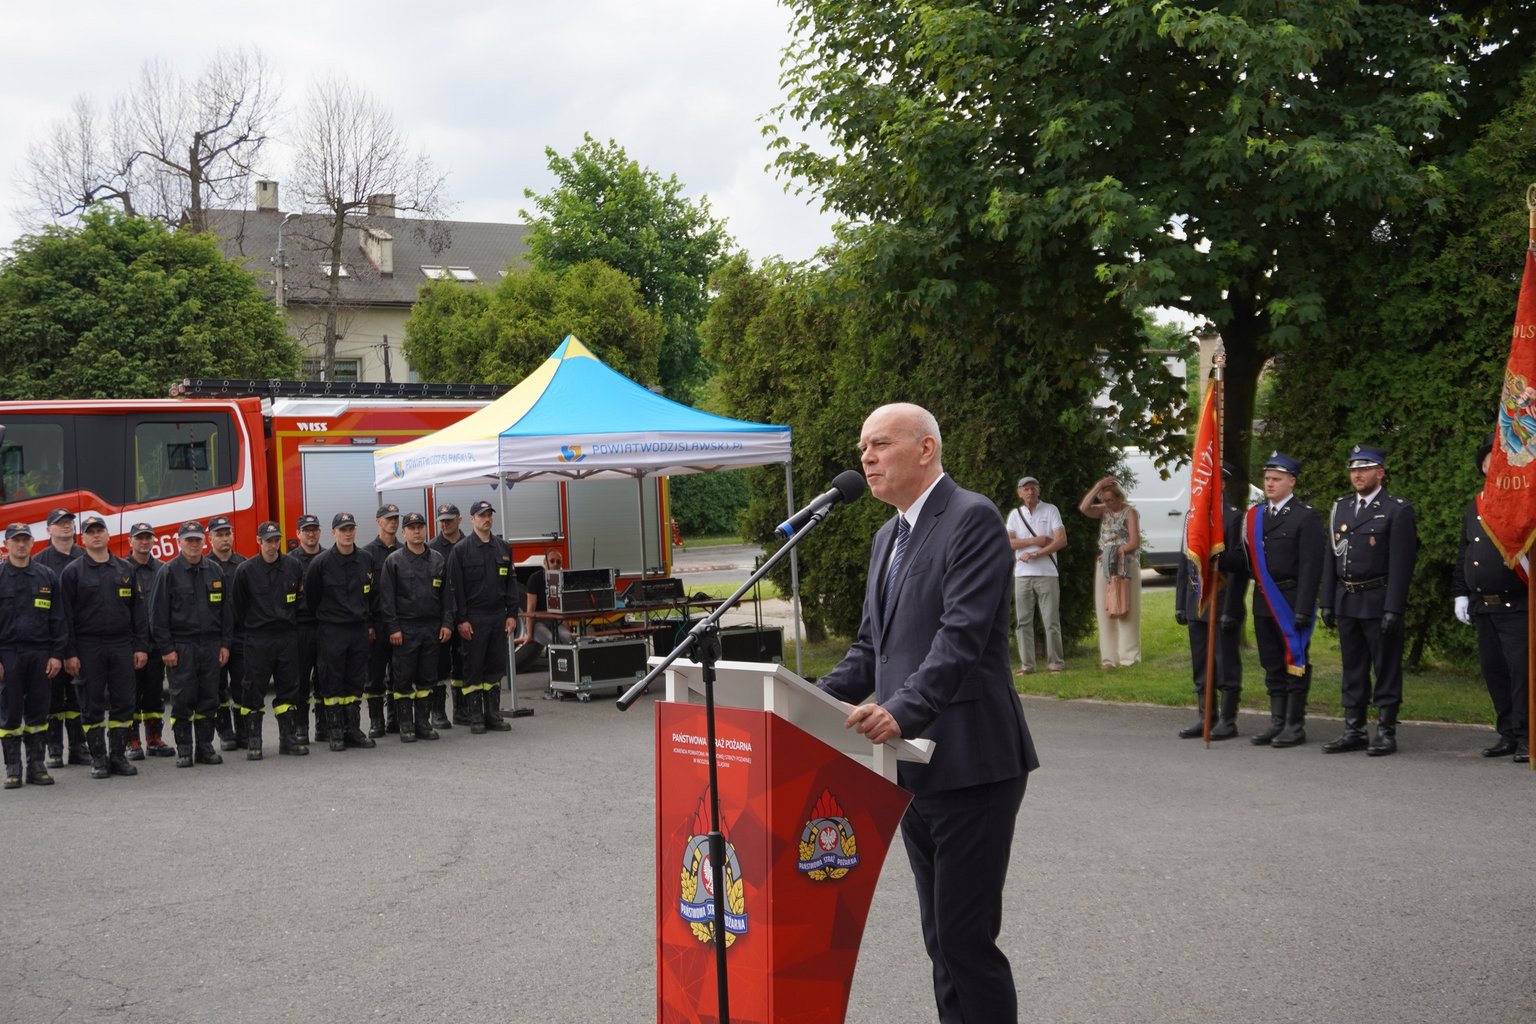 Poseł Krzysztof Gadowski podczas przemówienia na uroczystym apelu strażackim w powiecie wodzisławskim. 